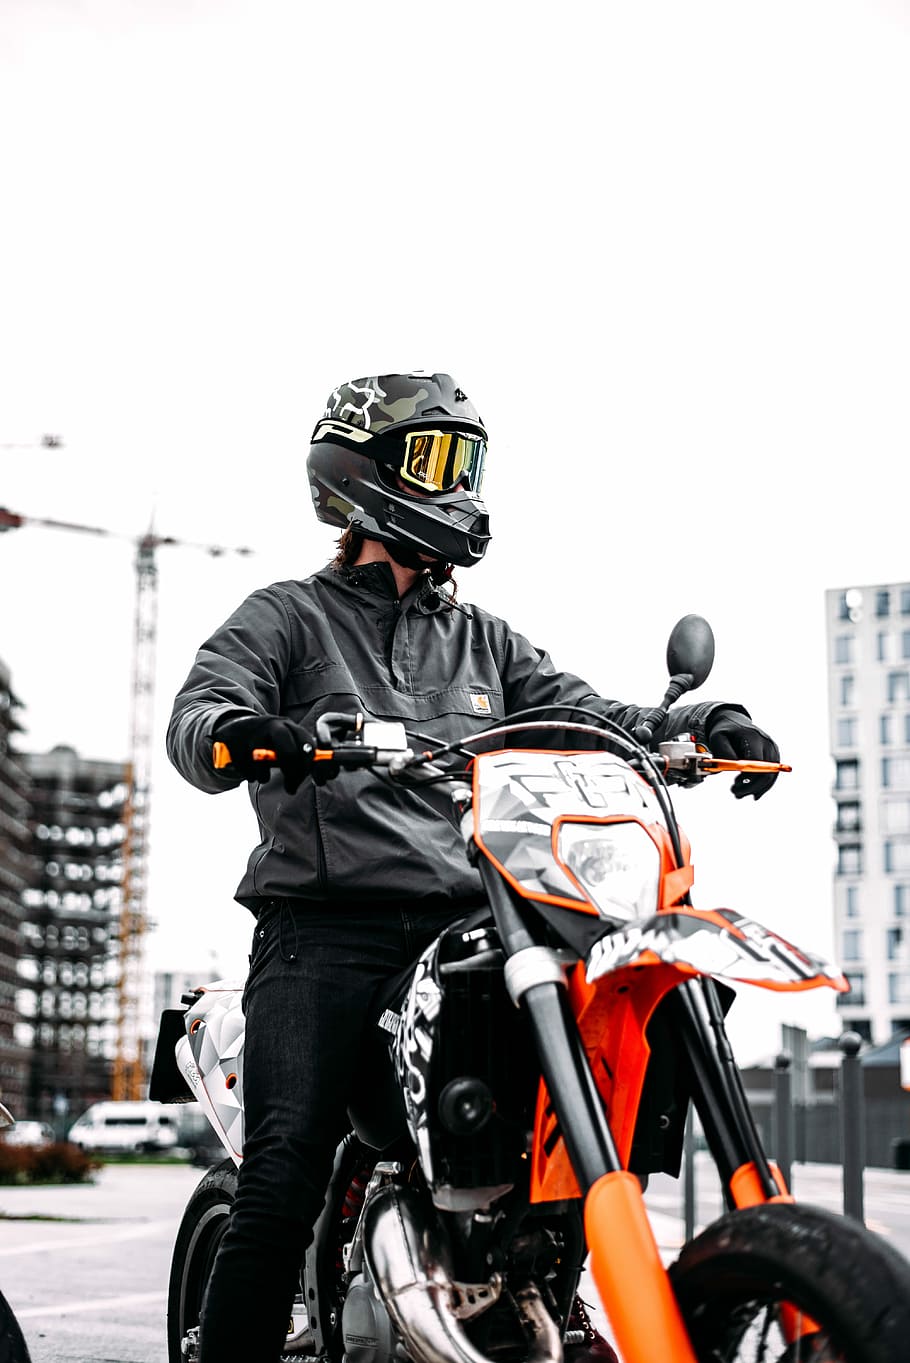 HD wallpaper: Ready?, man riding on motorcycle near buildings, motocross, biker